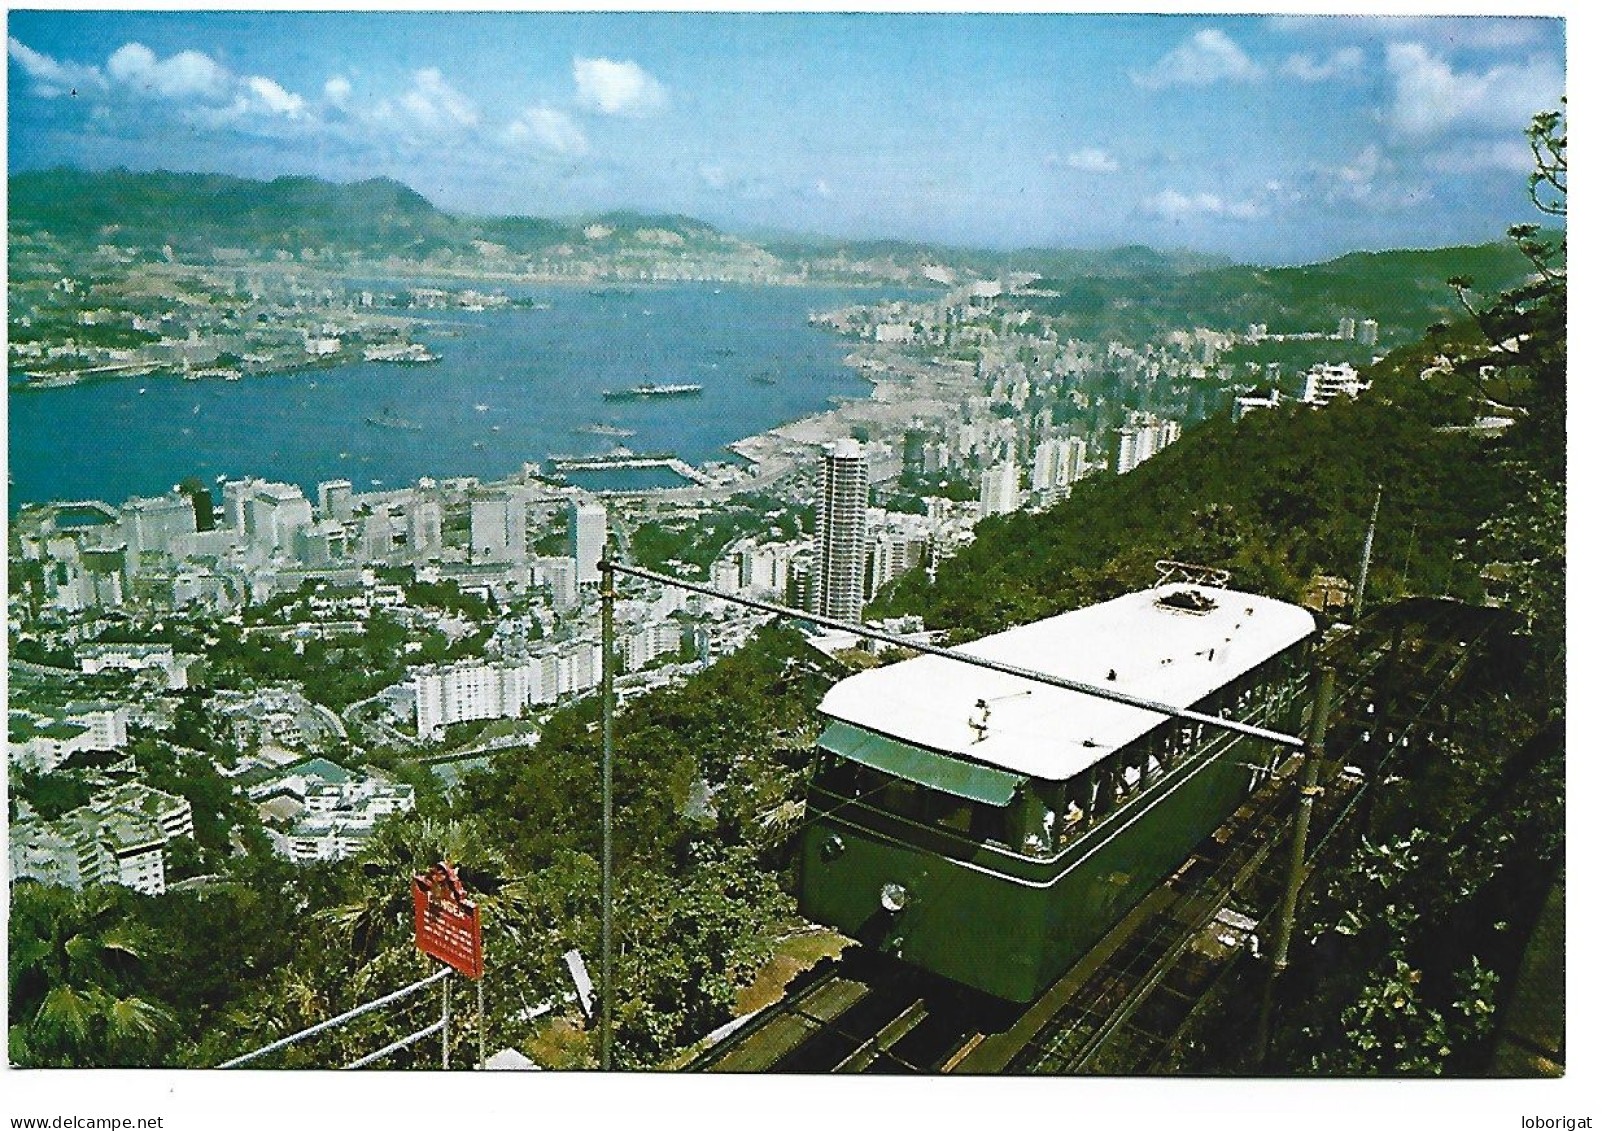 THE HONG KONG PEAK TRAMWAY.- TRANVIA - TRAMWAY - " HONG KONG " - Funiculares